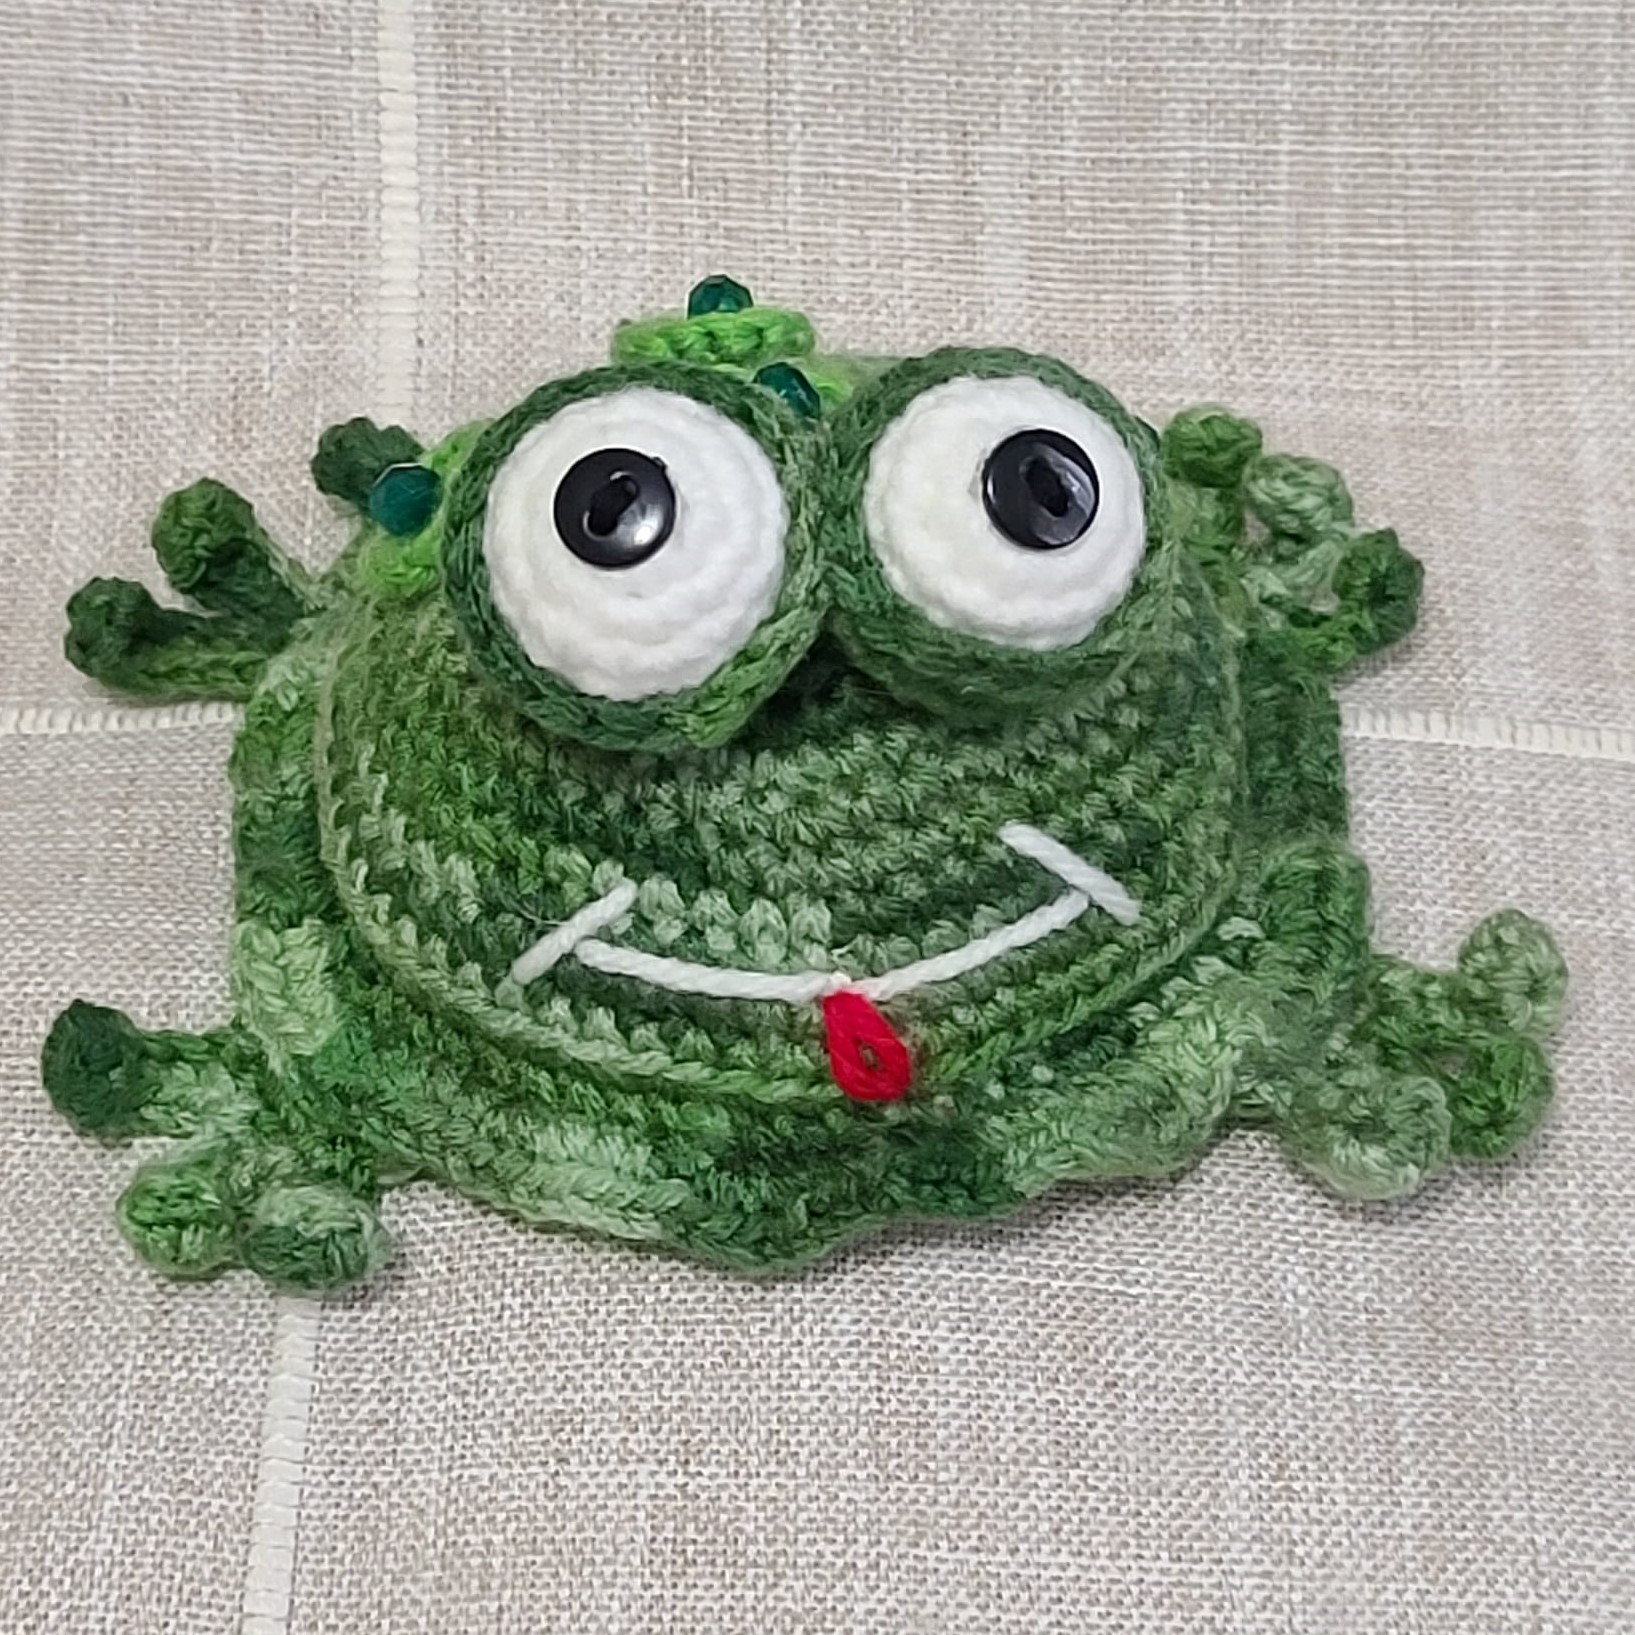 Crochet amigurumi handmade green frog